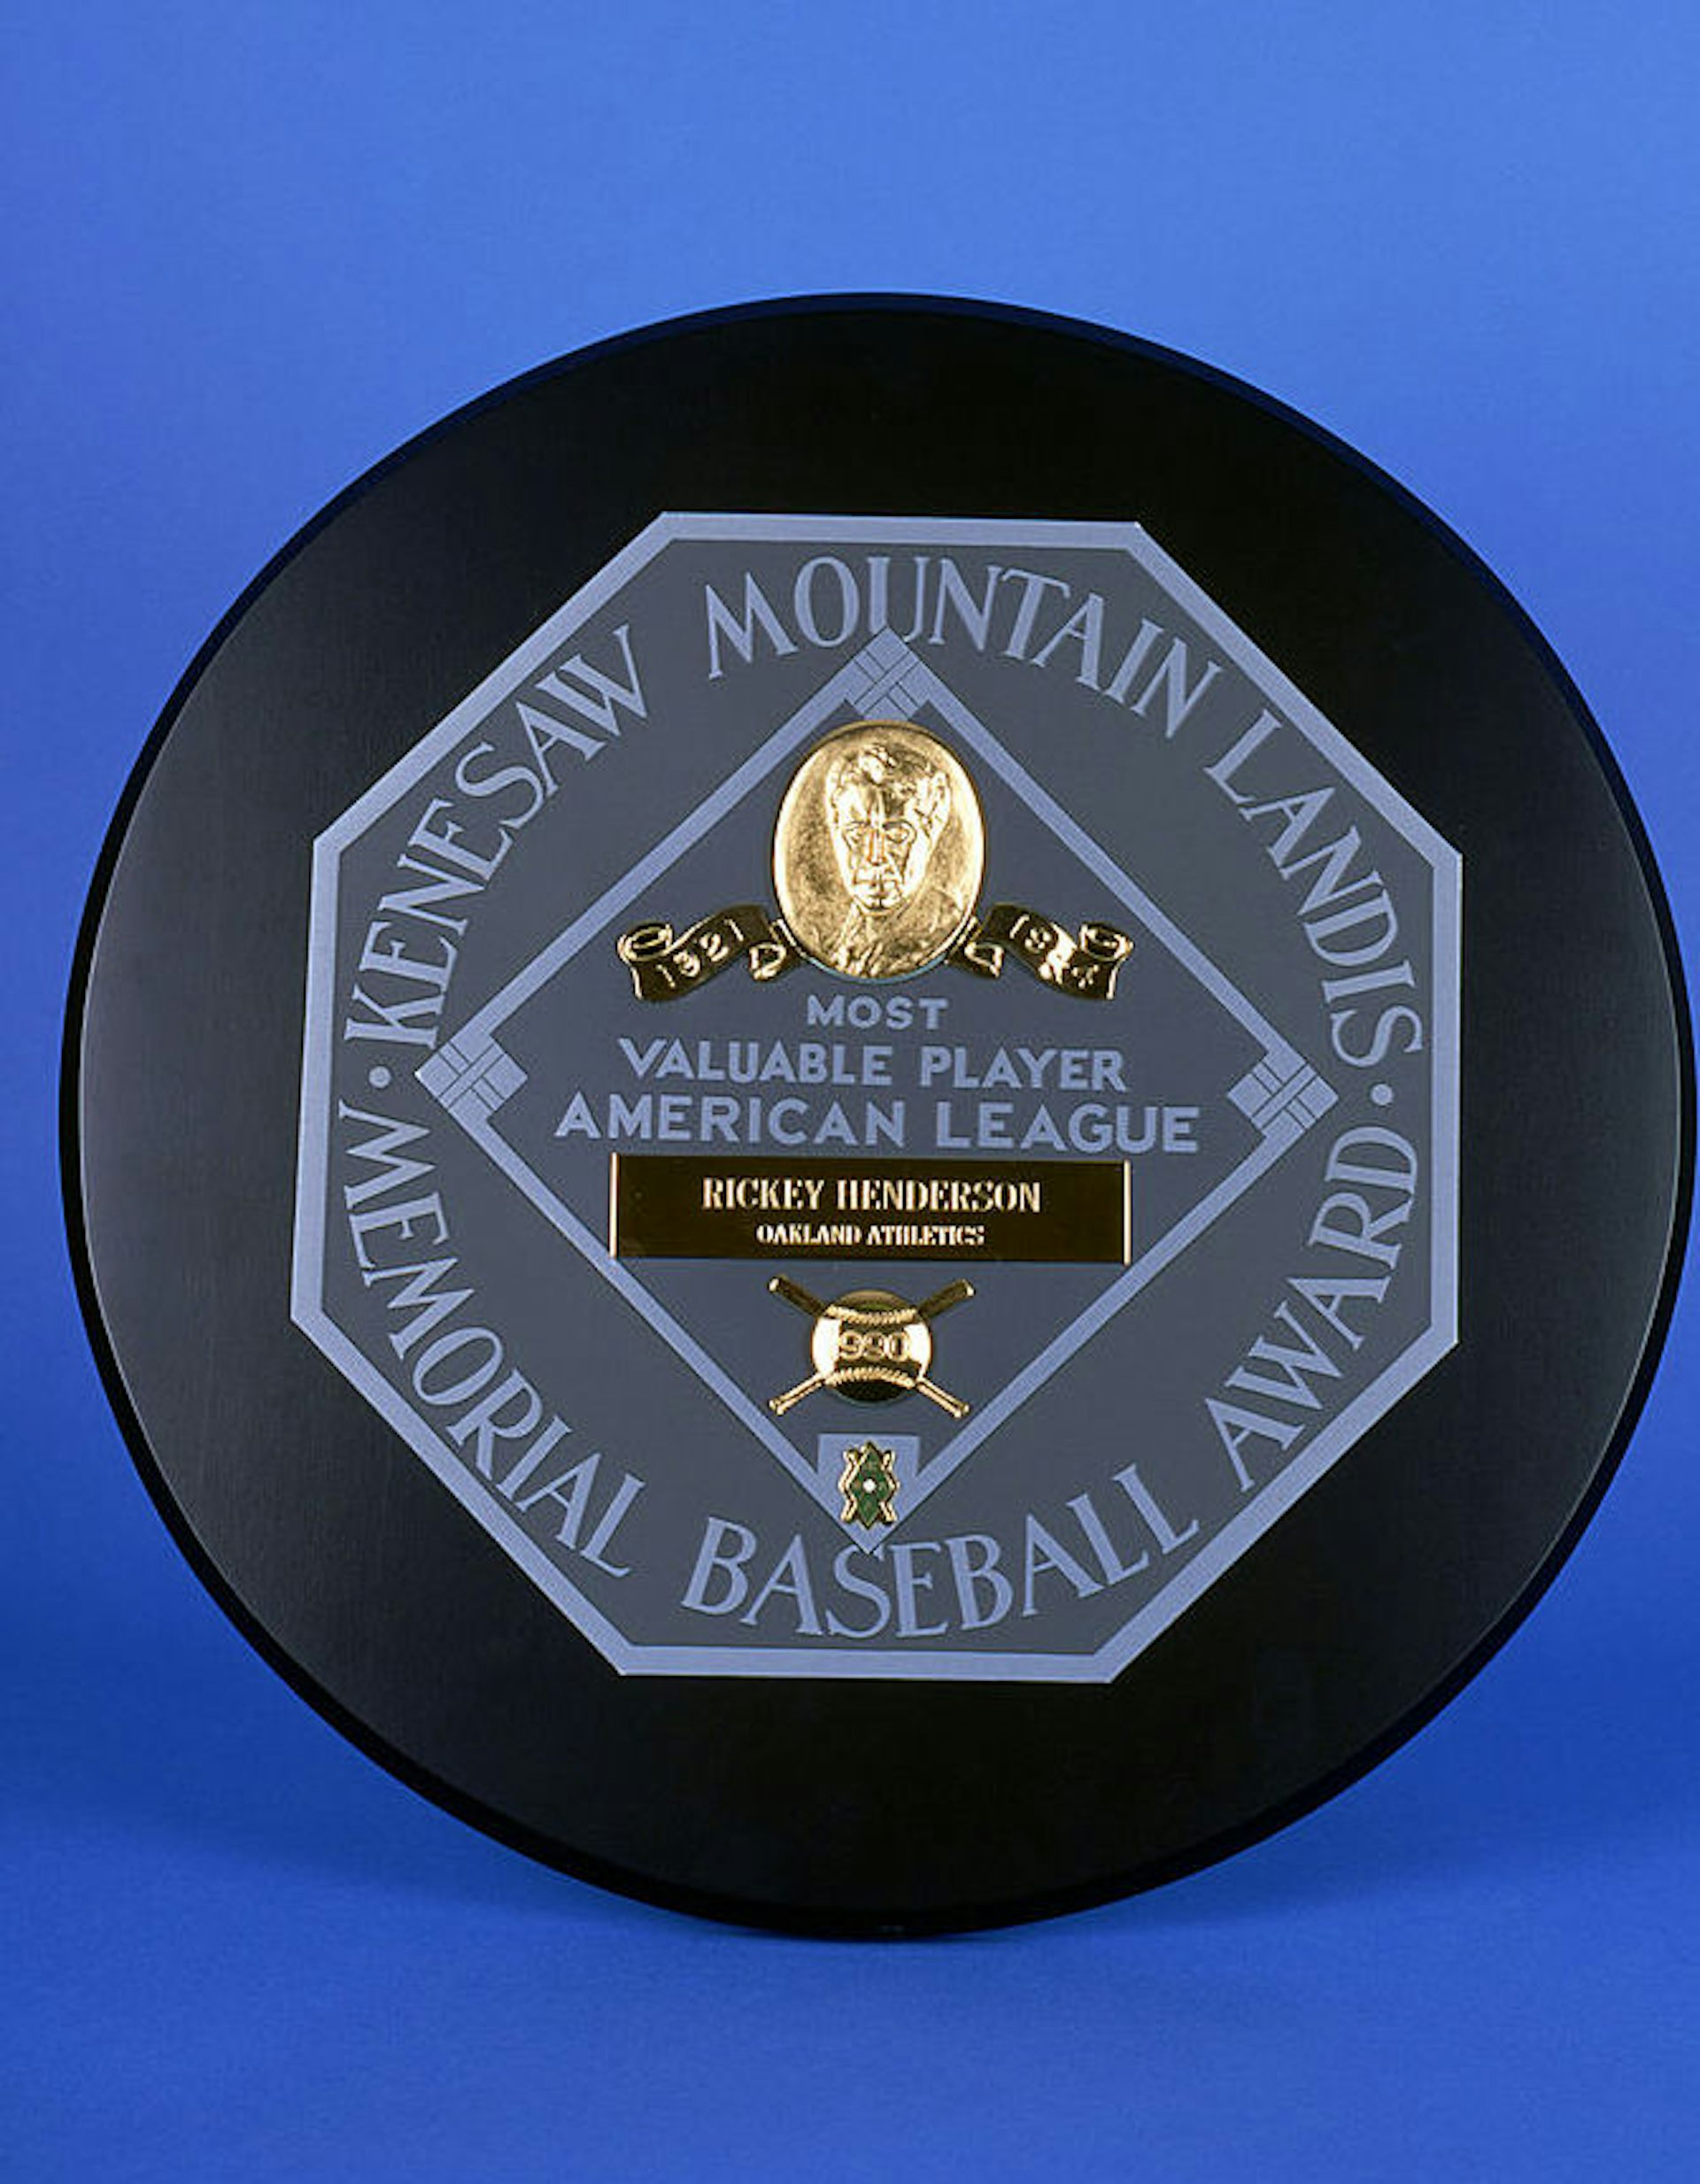 Udělena Oakland Athletics hráč Rickey Henderson, 1990 American League nejcennější Hráč Ocenění prominentně představuje Kenesaw Mountain Landis jméno.